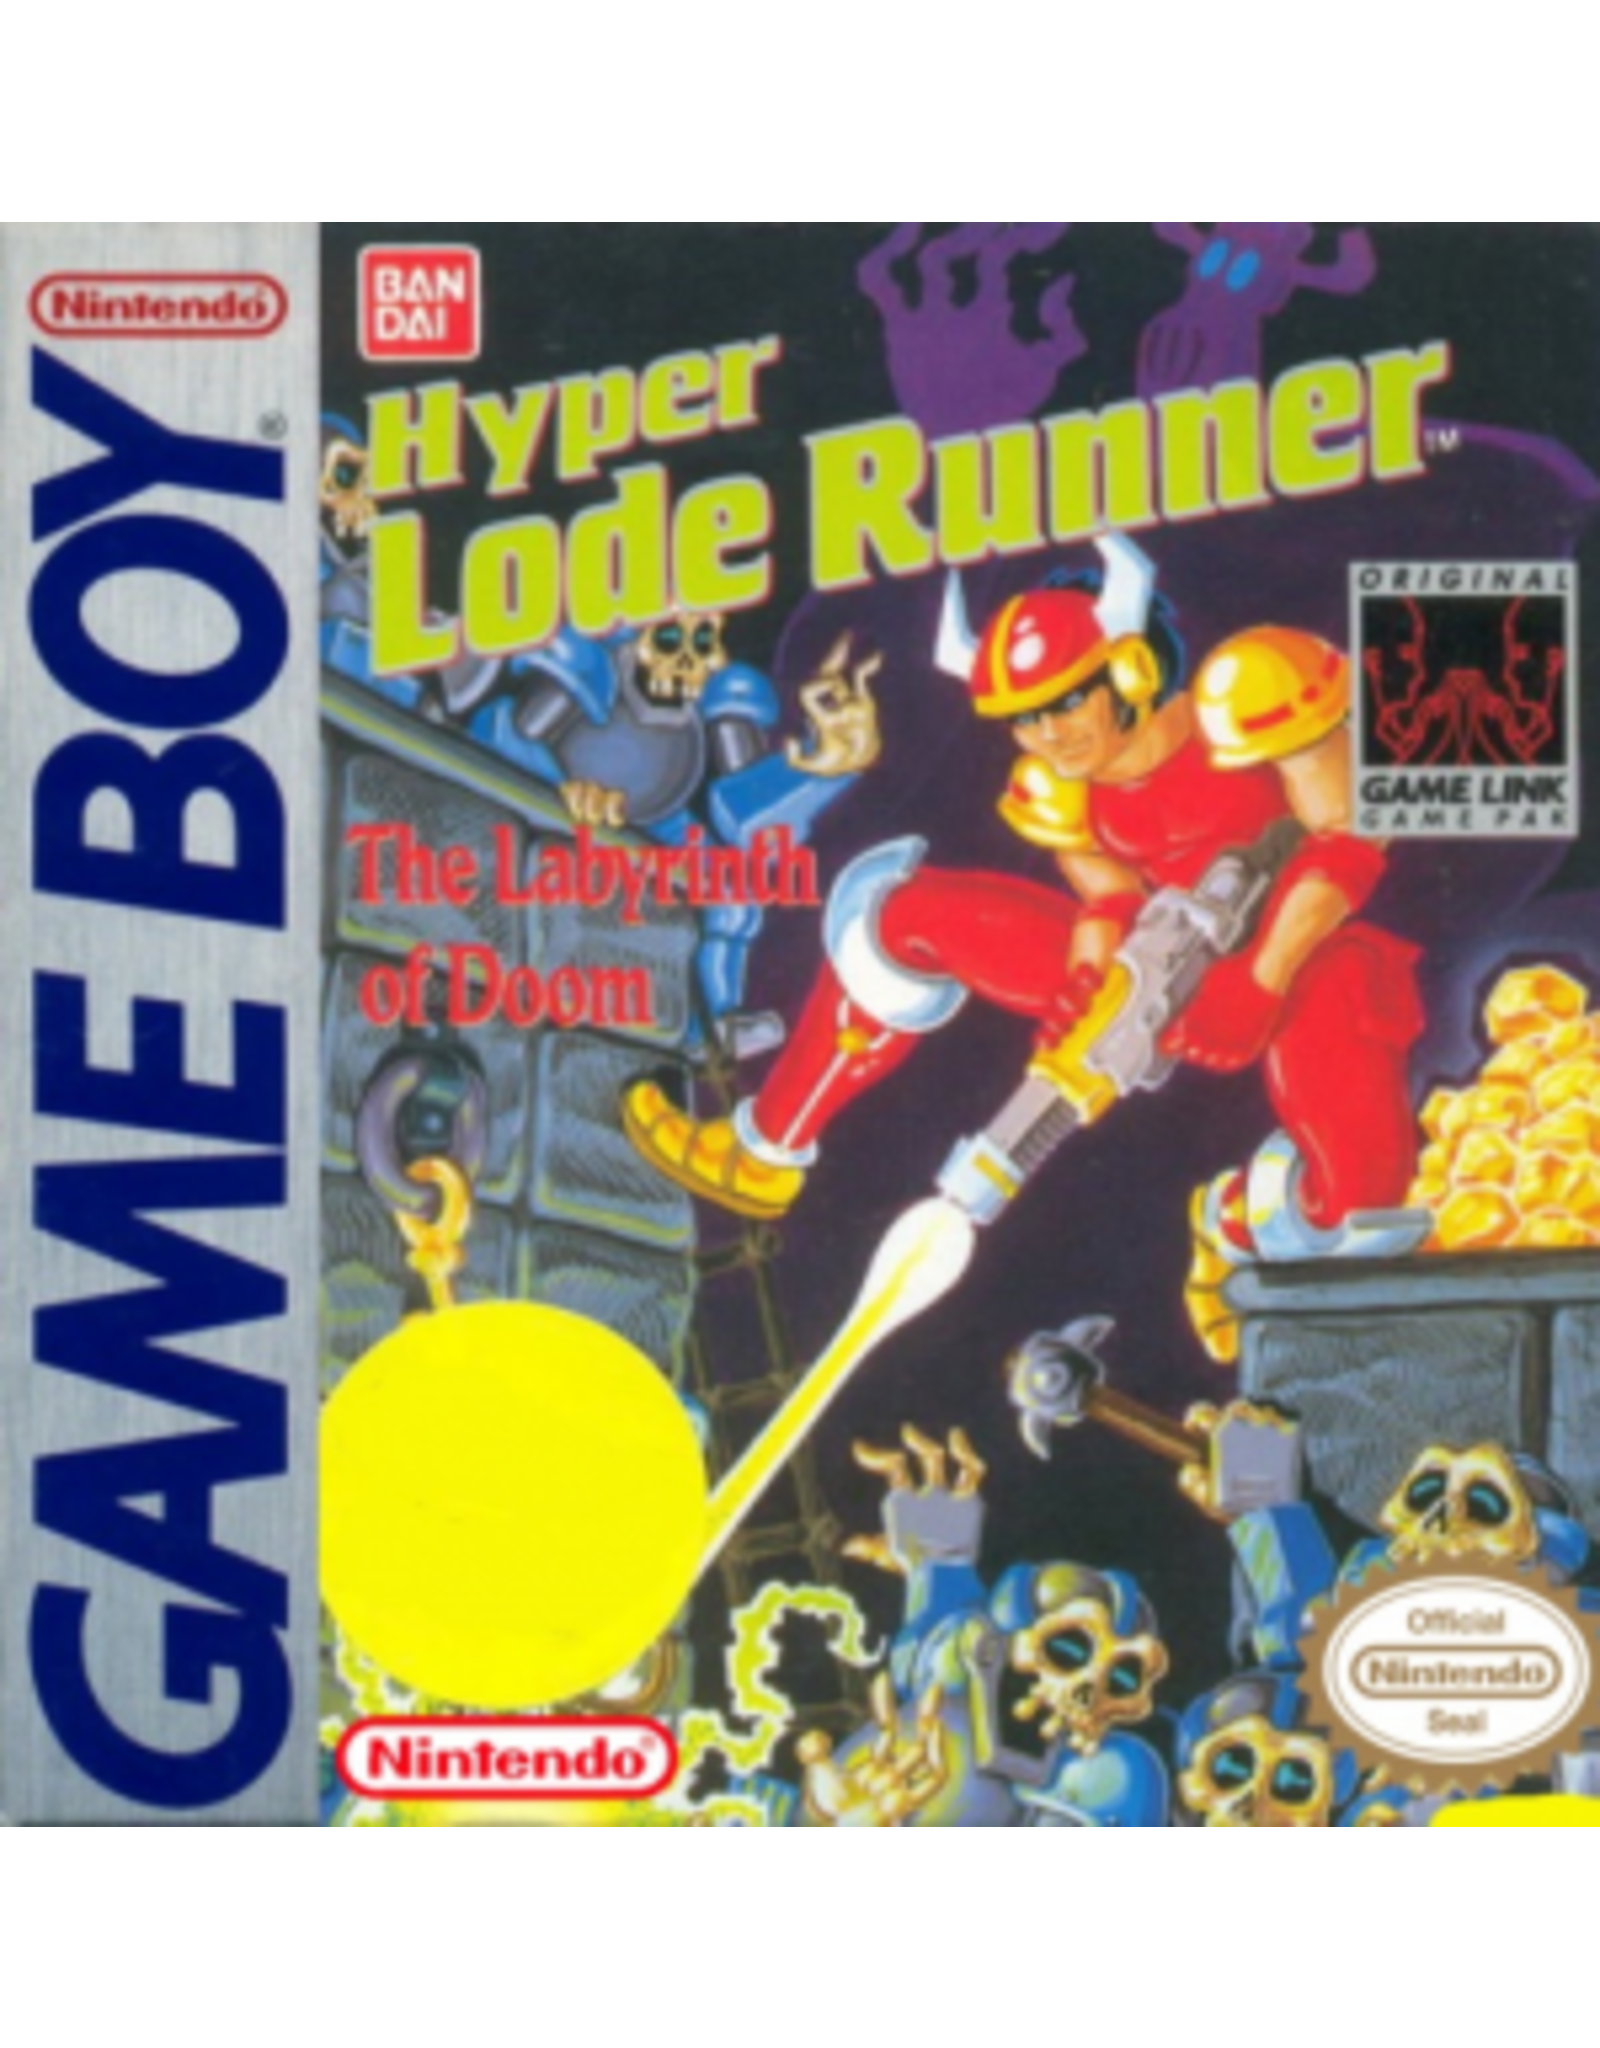 Game Boy Hyper Lode Runner (Cart Only)